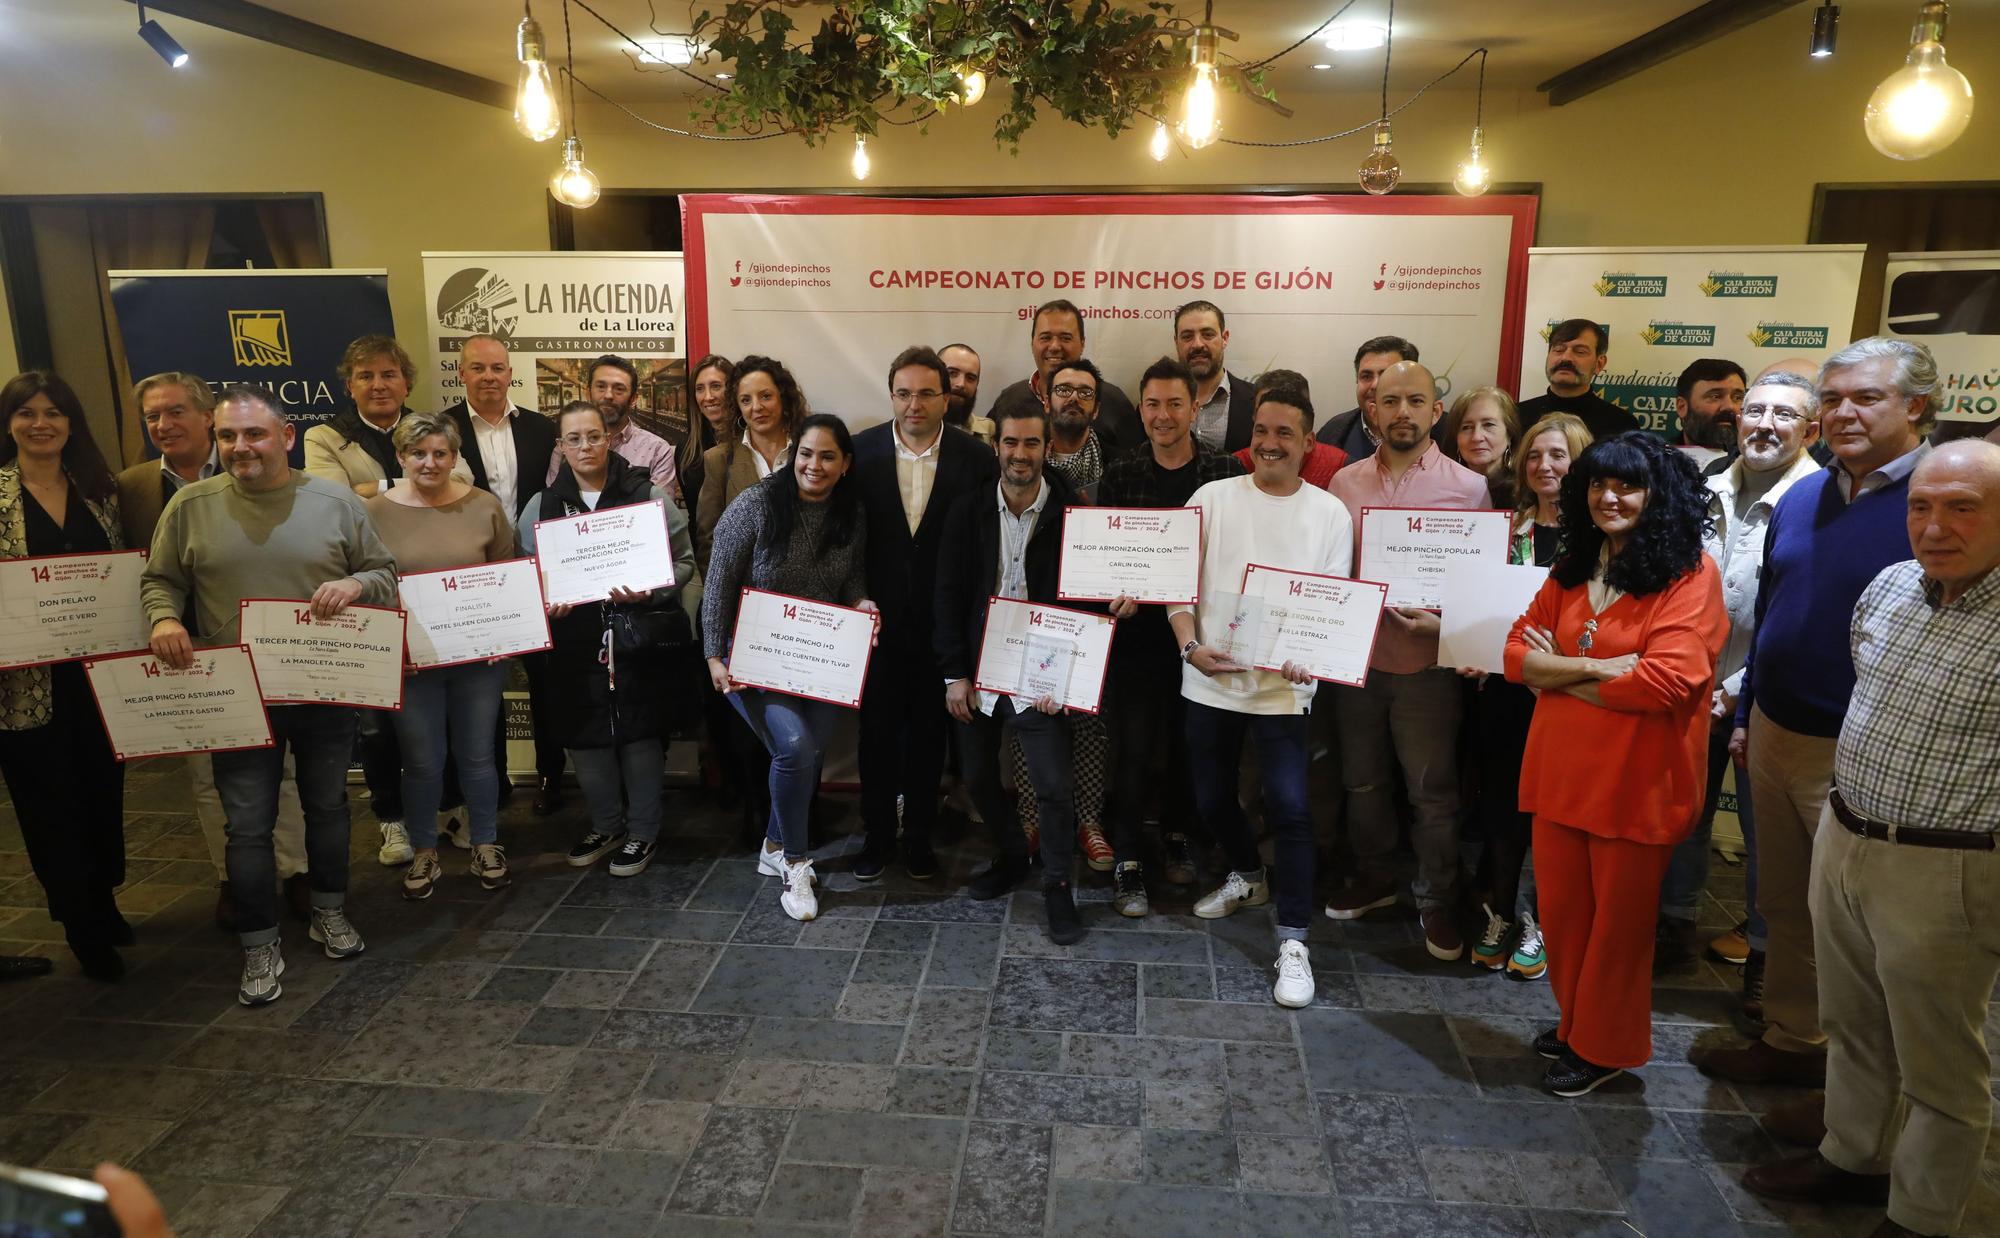 EN IMÁGENES: Entrega de los galardones del Campeonato de Pinchos de Gijón